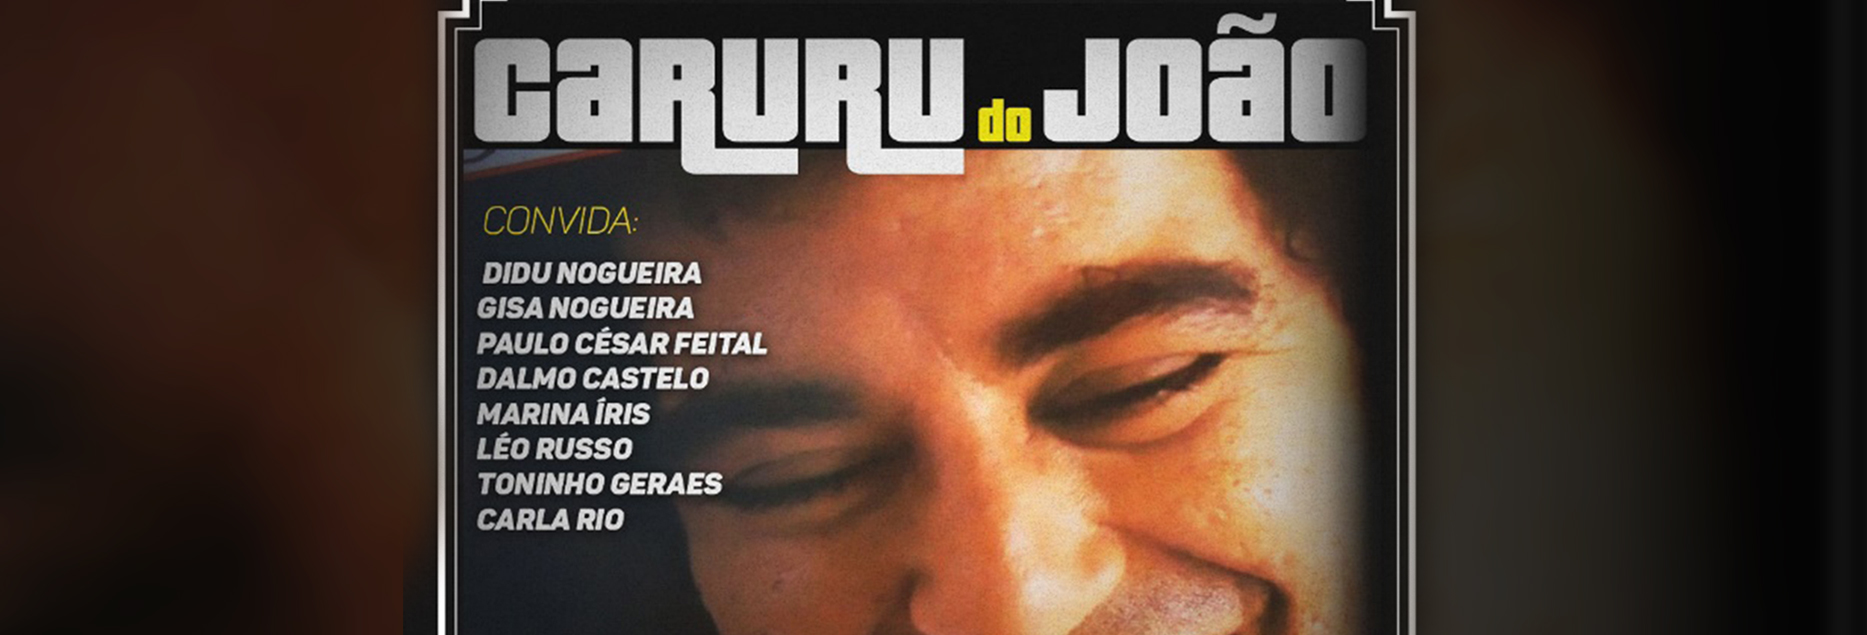 Caruru do João - roda de samba em homenagem a João Nogueira